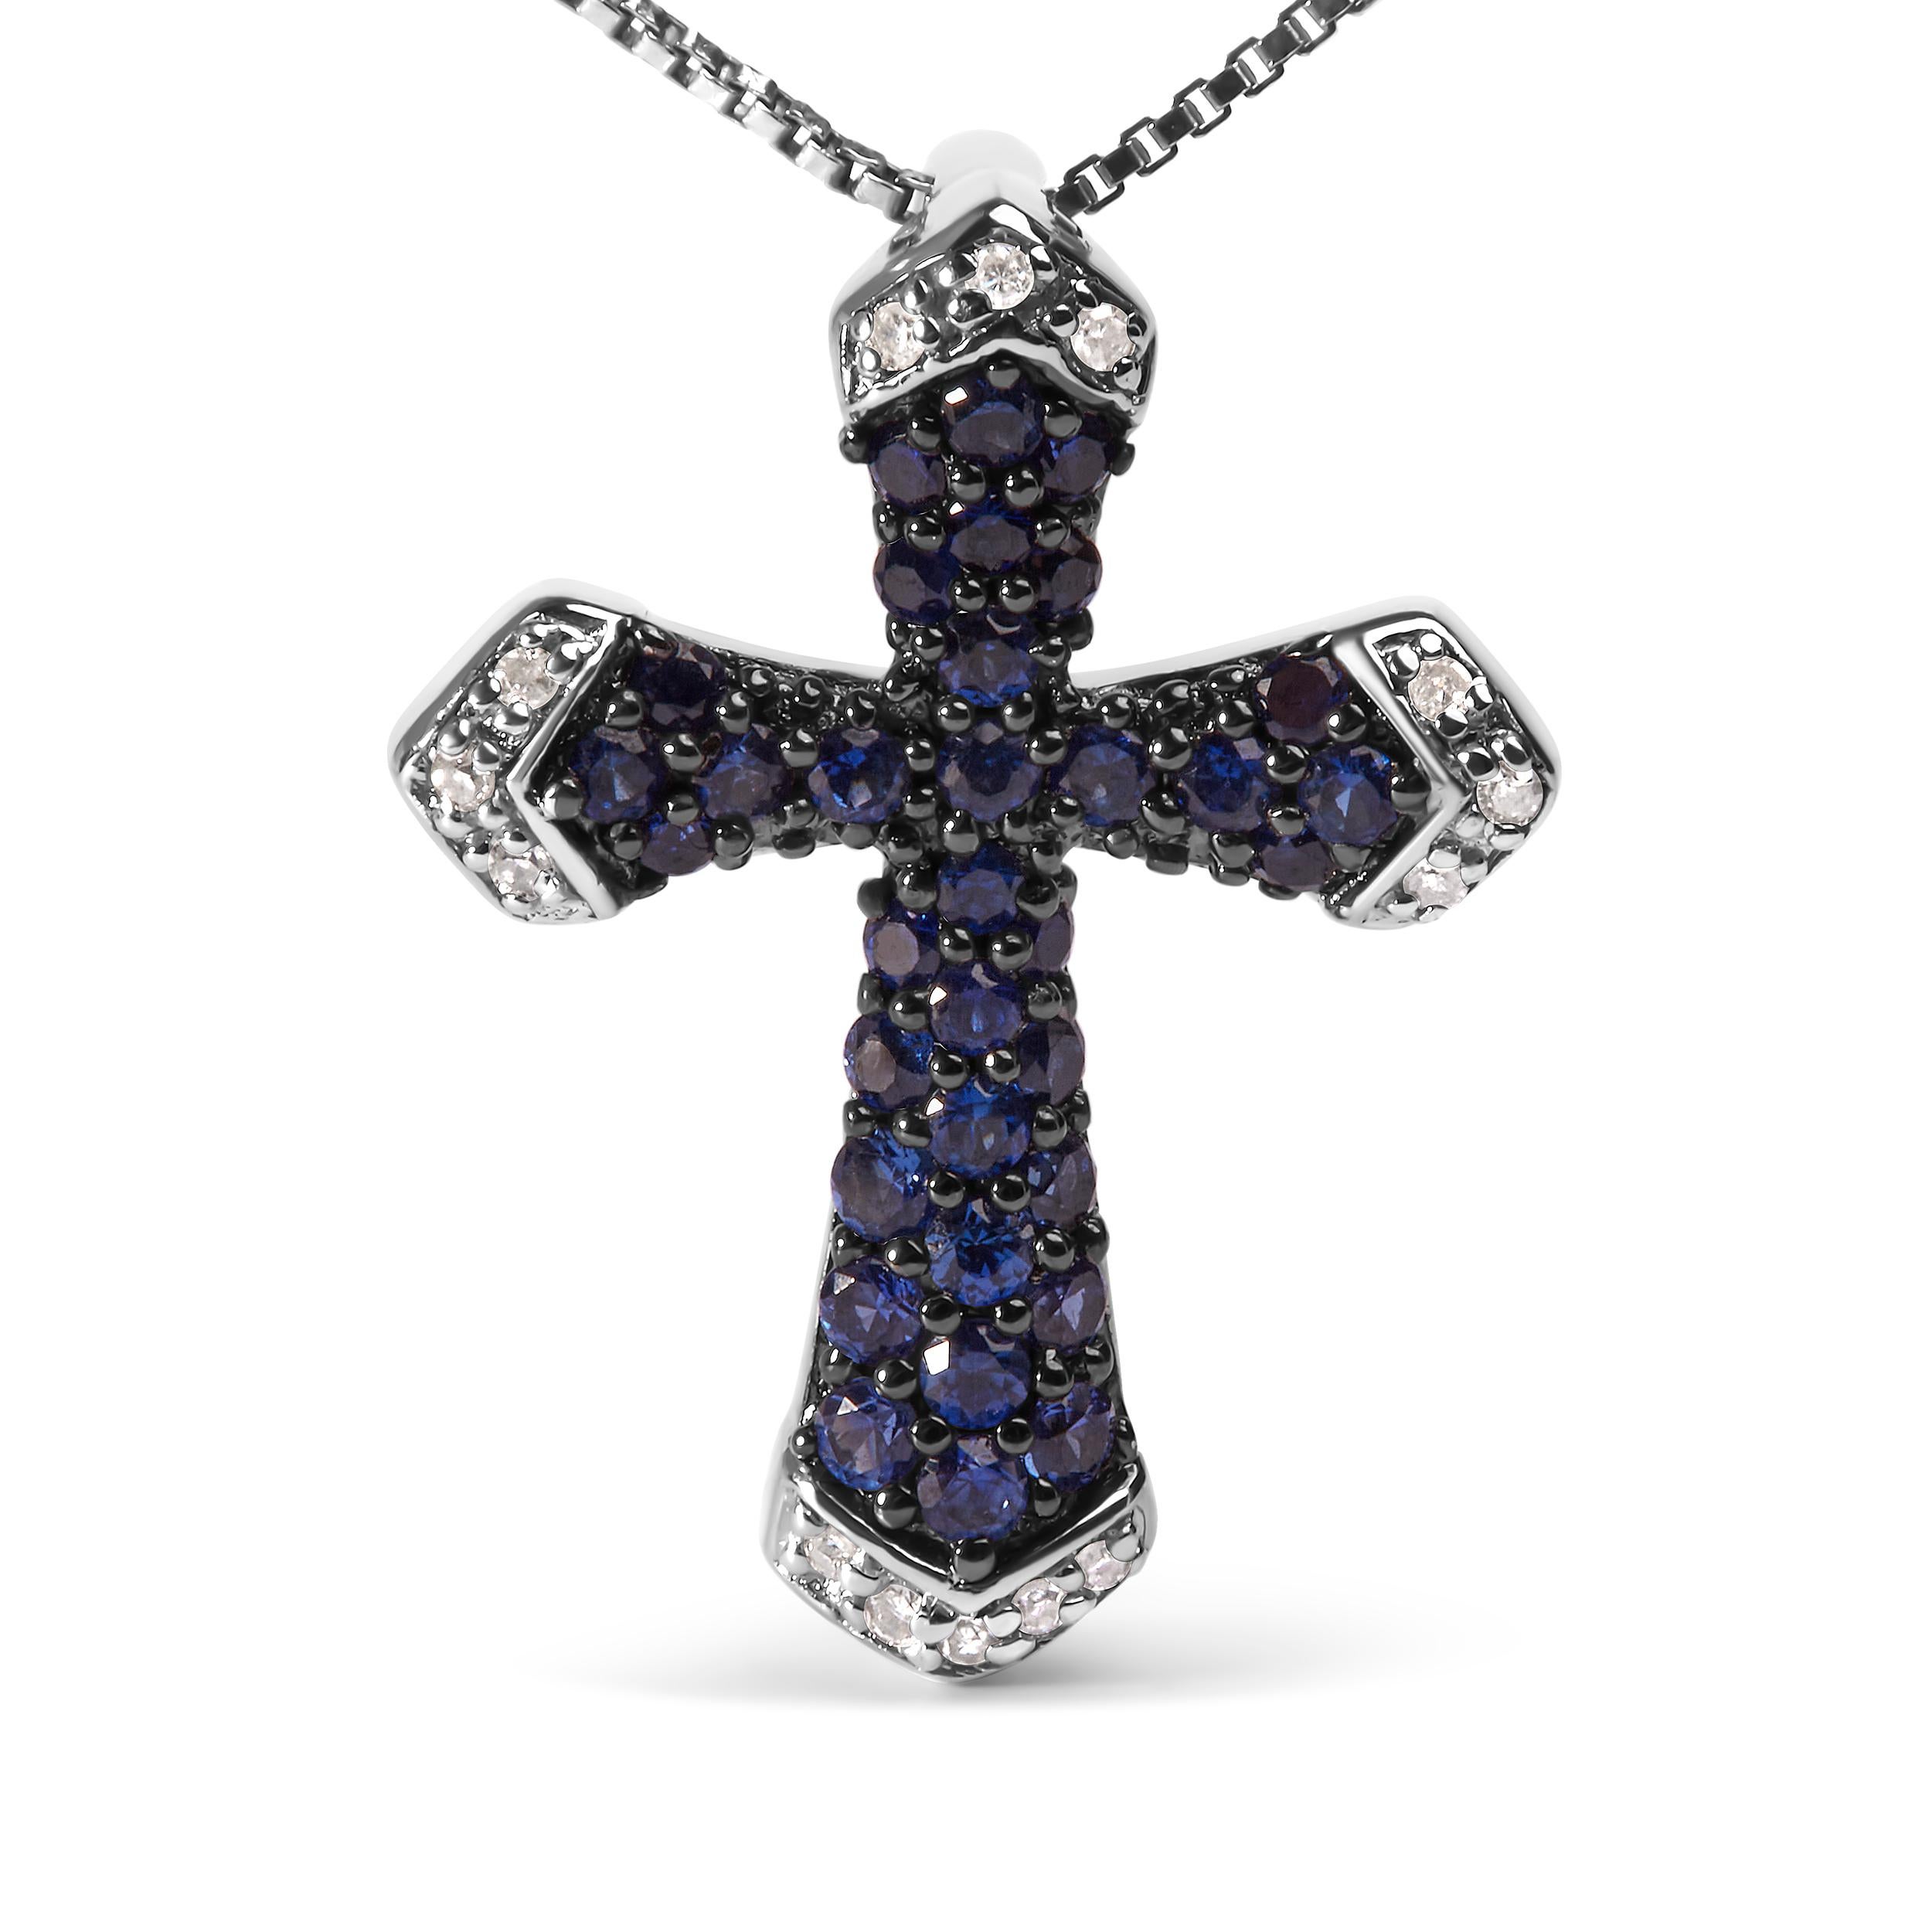 Ein göttliches Meisterwerk, das Eleganz und Anmut ausstrahlt. Diese exquisite .925 Sterling Silber Anhänger Halskette ist mit einem faszinierenden 3/4 Cttw Created Blue Sapphire Edelstein geschmückt, strahlt einen himmlischen blauen Farbton. Der